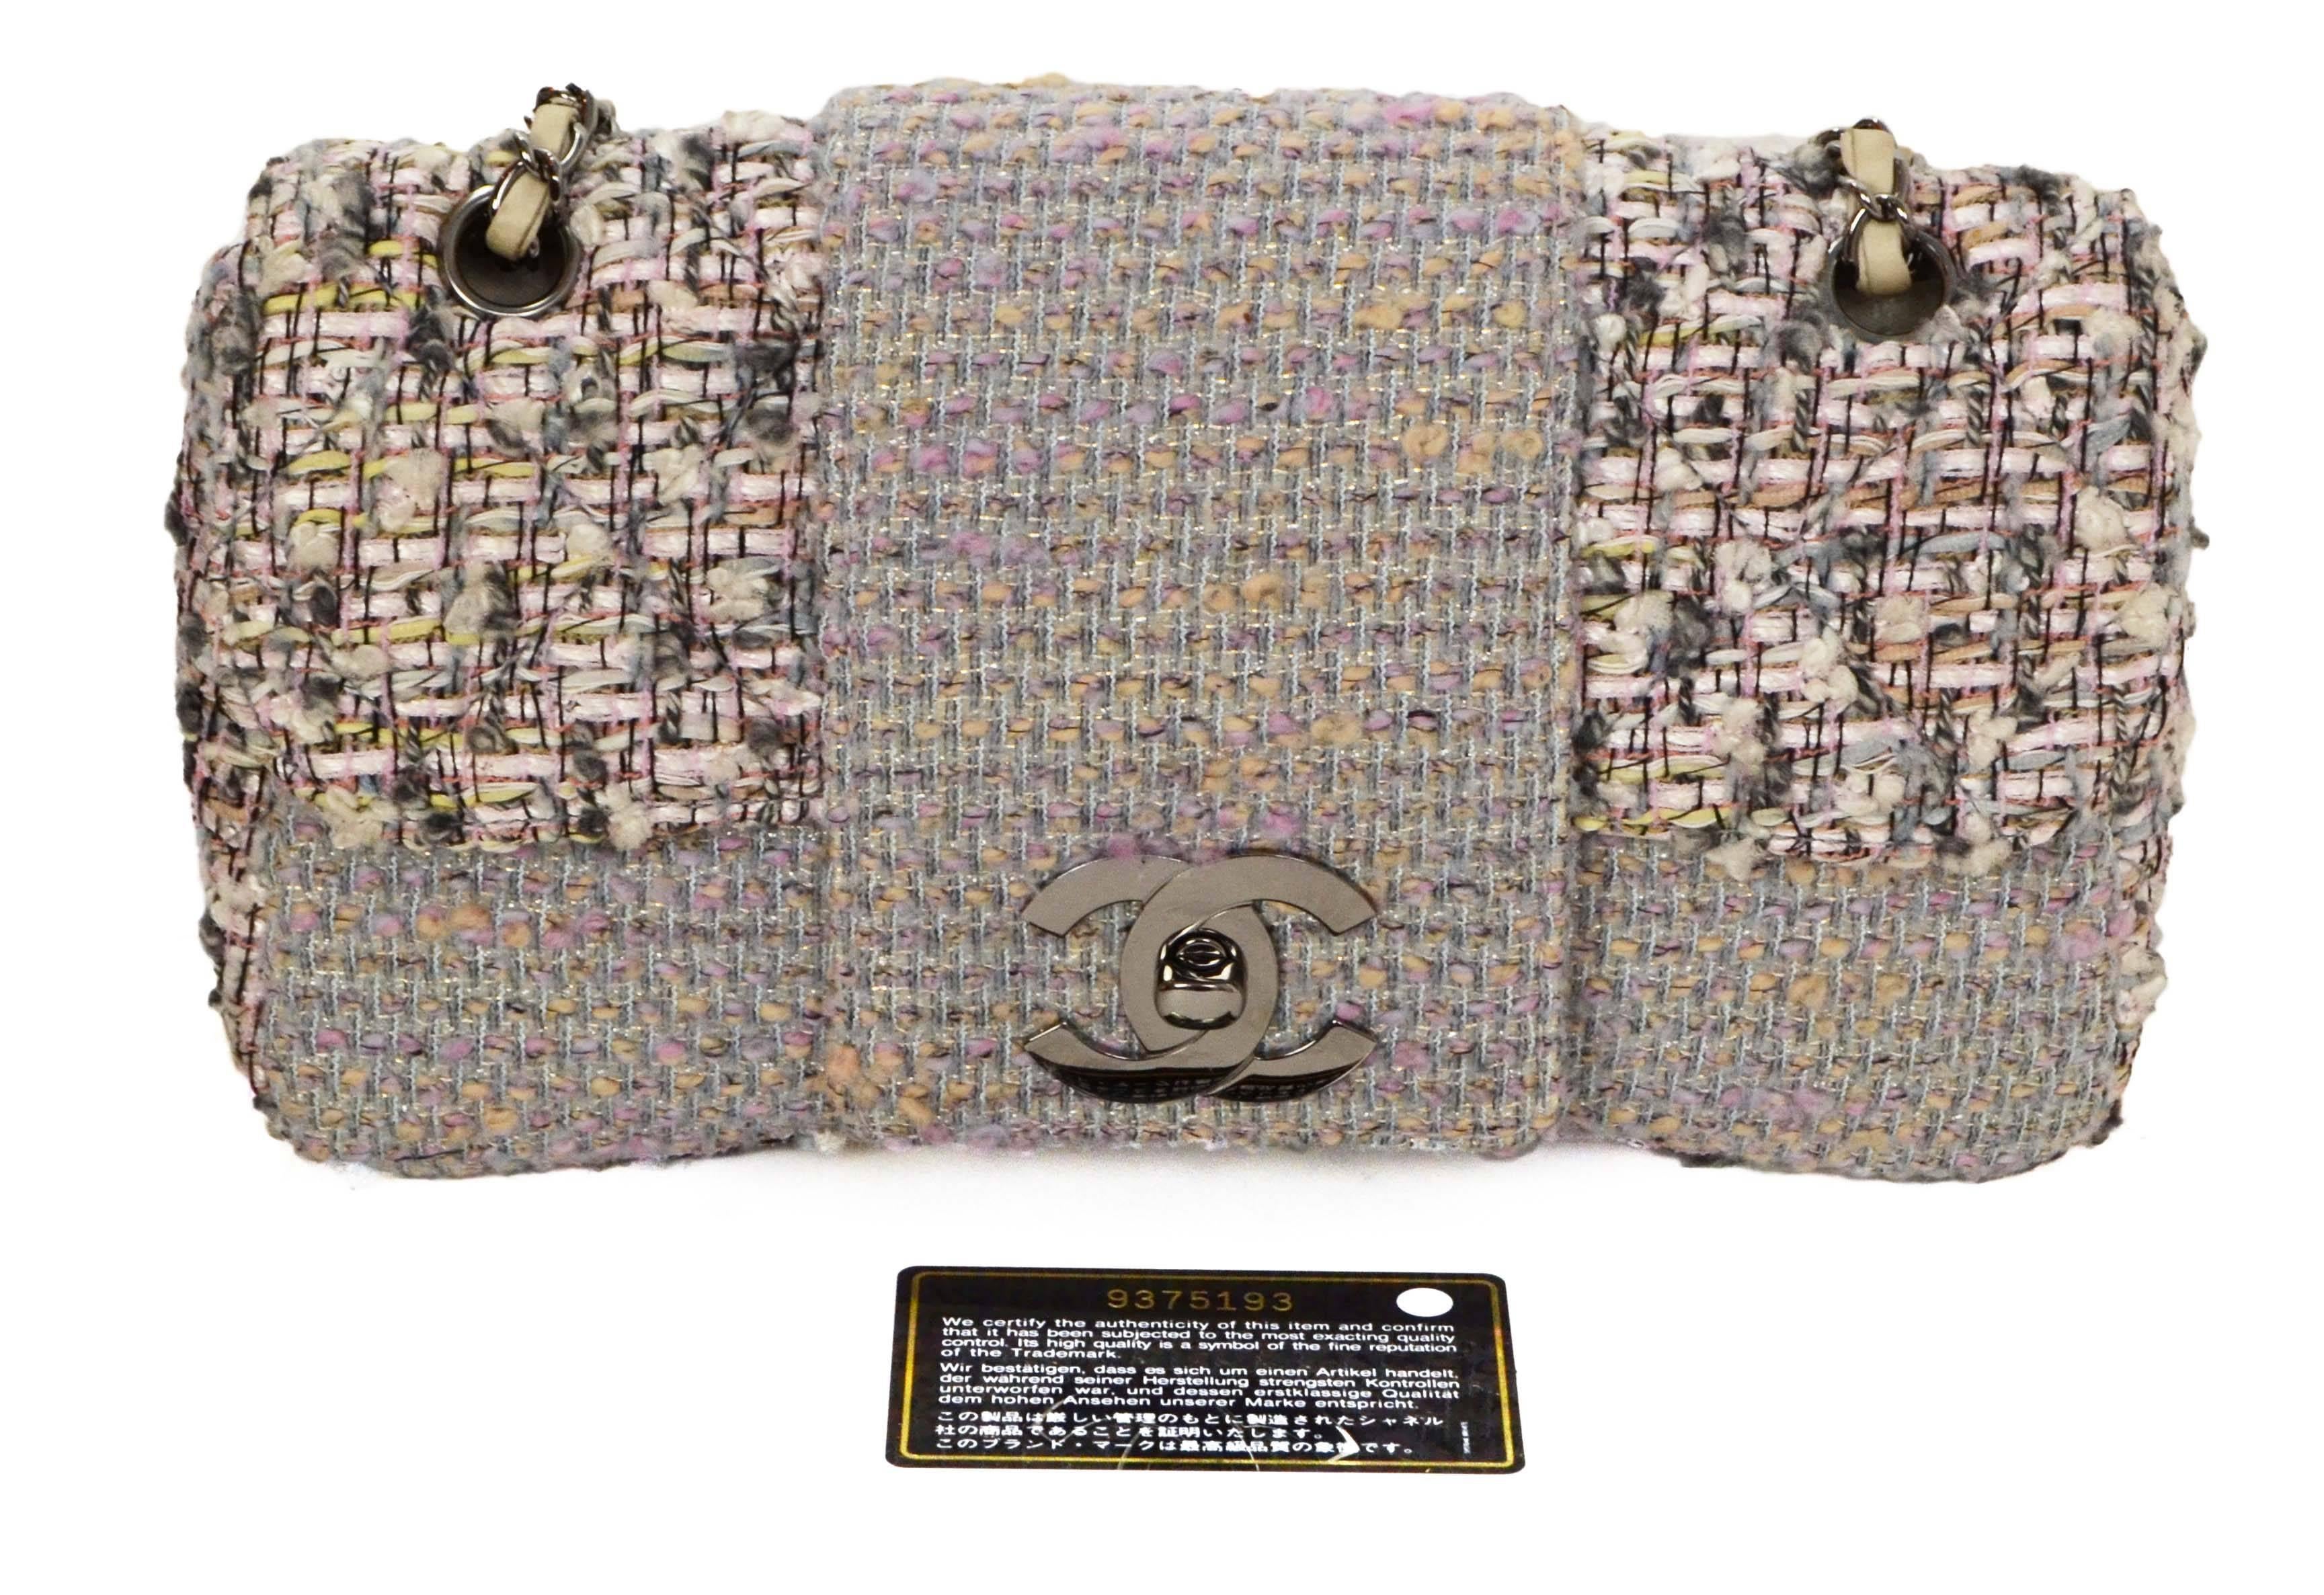 Chanel Pink & Grey Tweed Medium Classic Flap Bag RHW 5